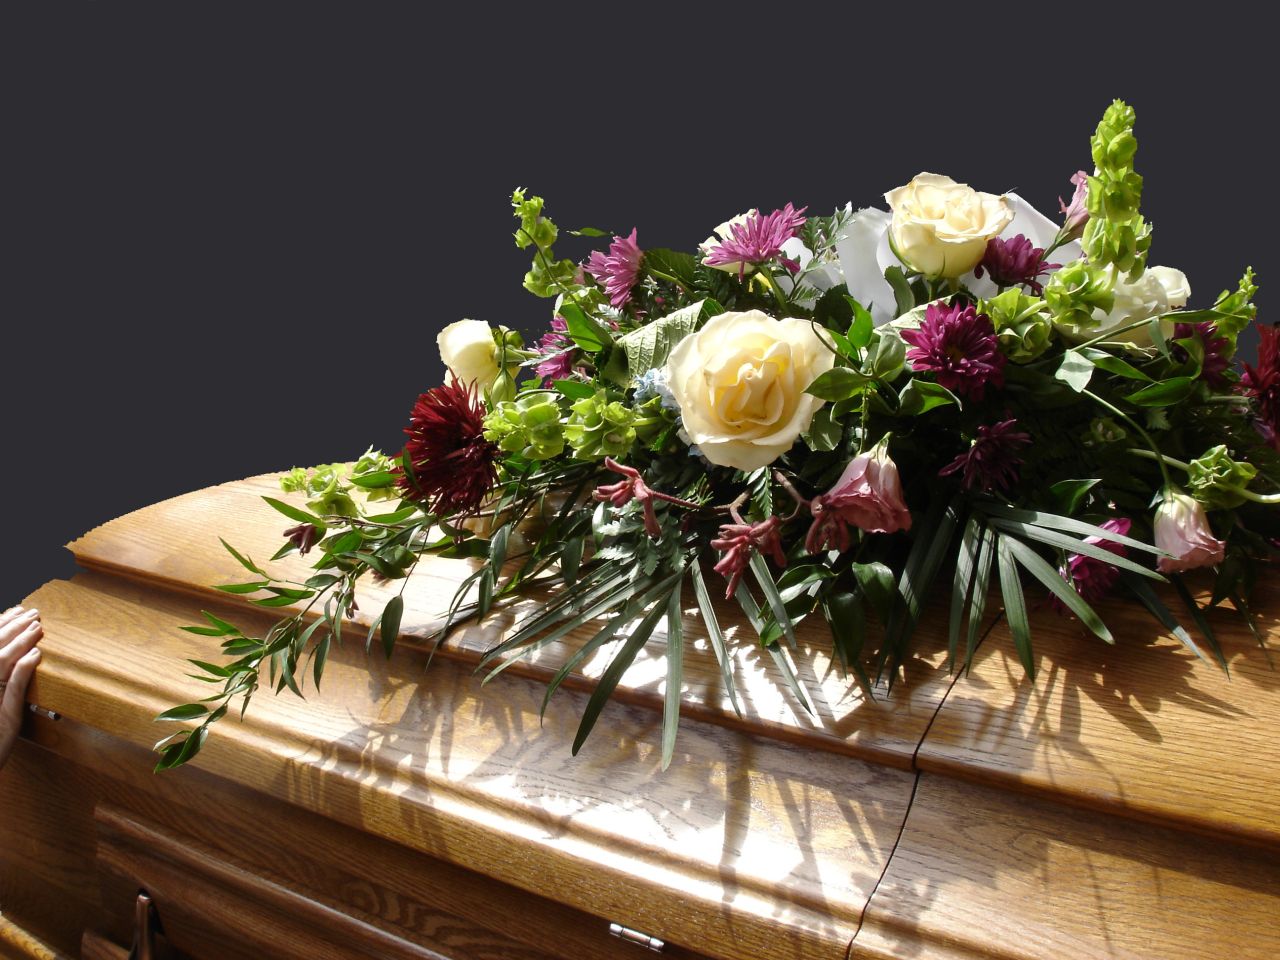 Jakie usługi świadczą zakłady pogrzebowe